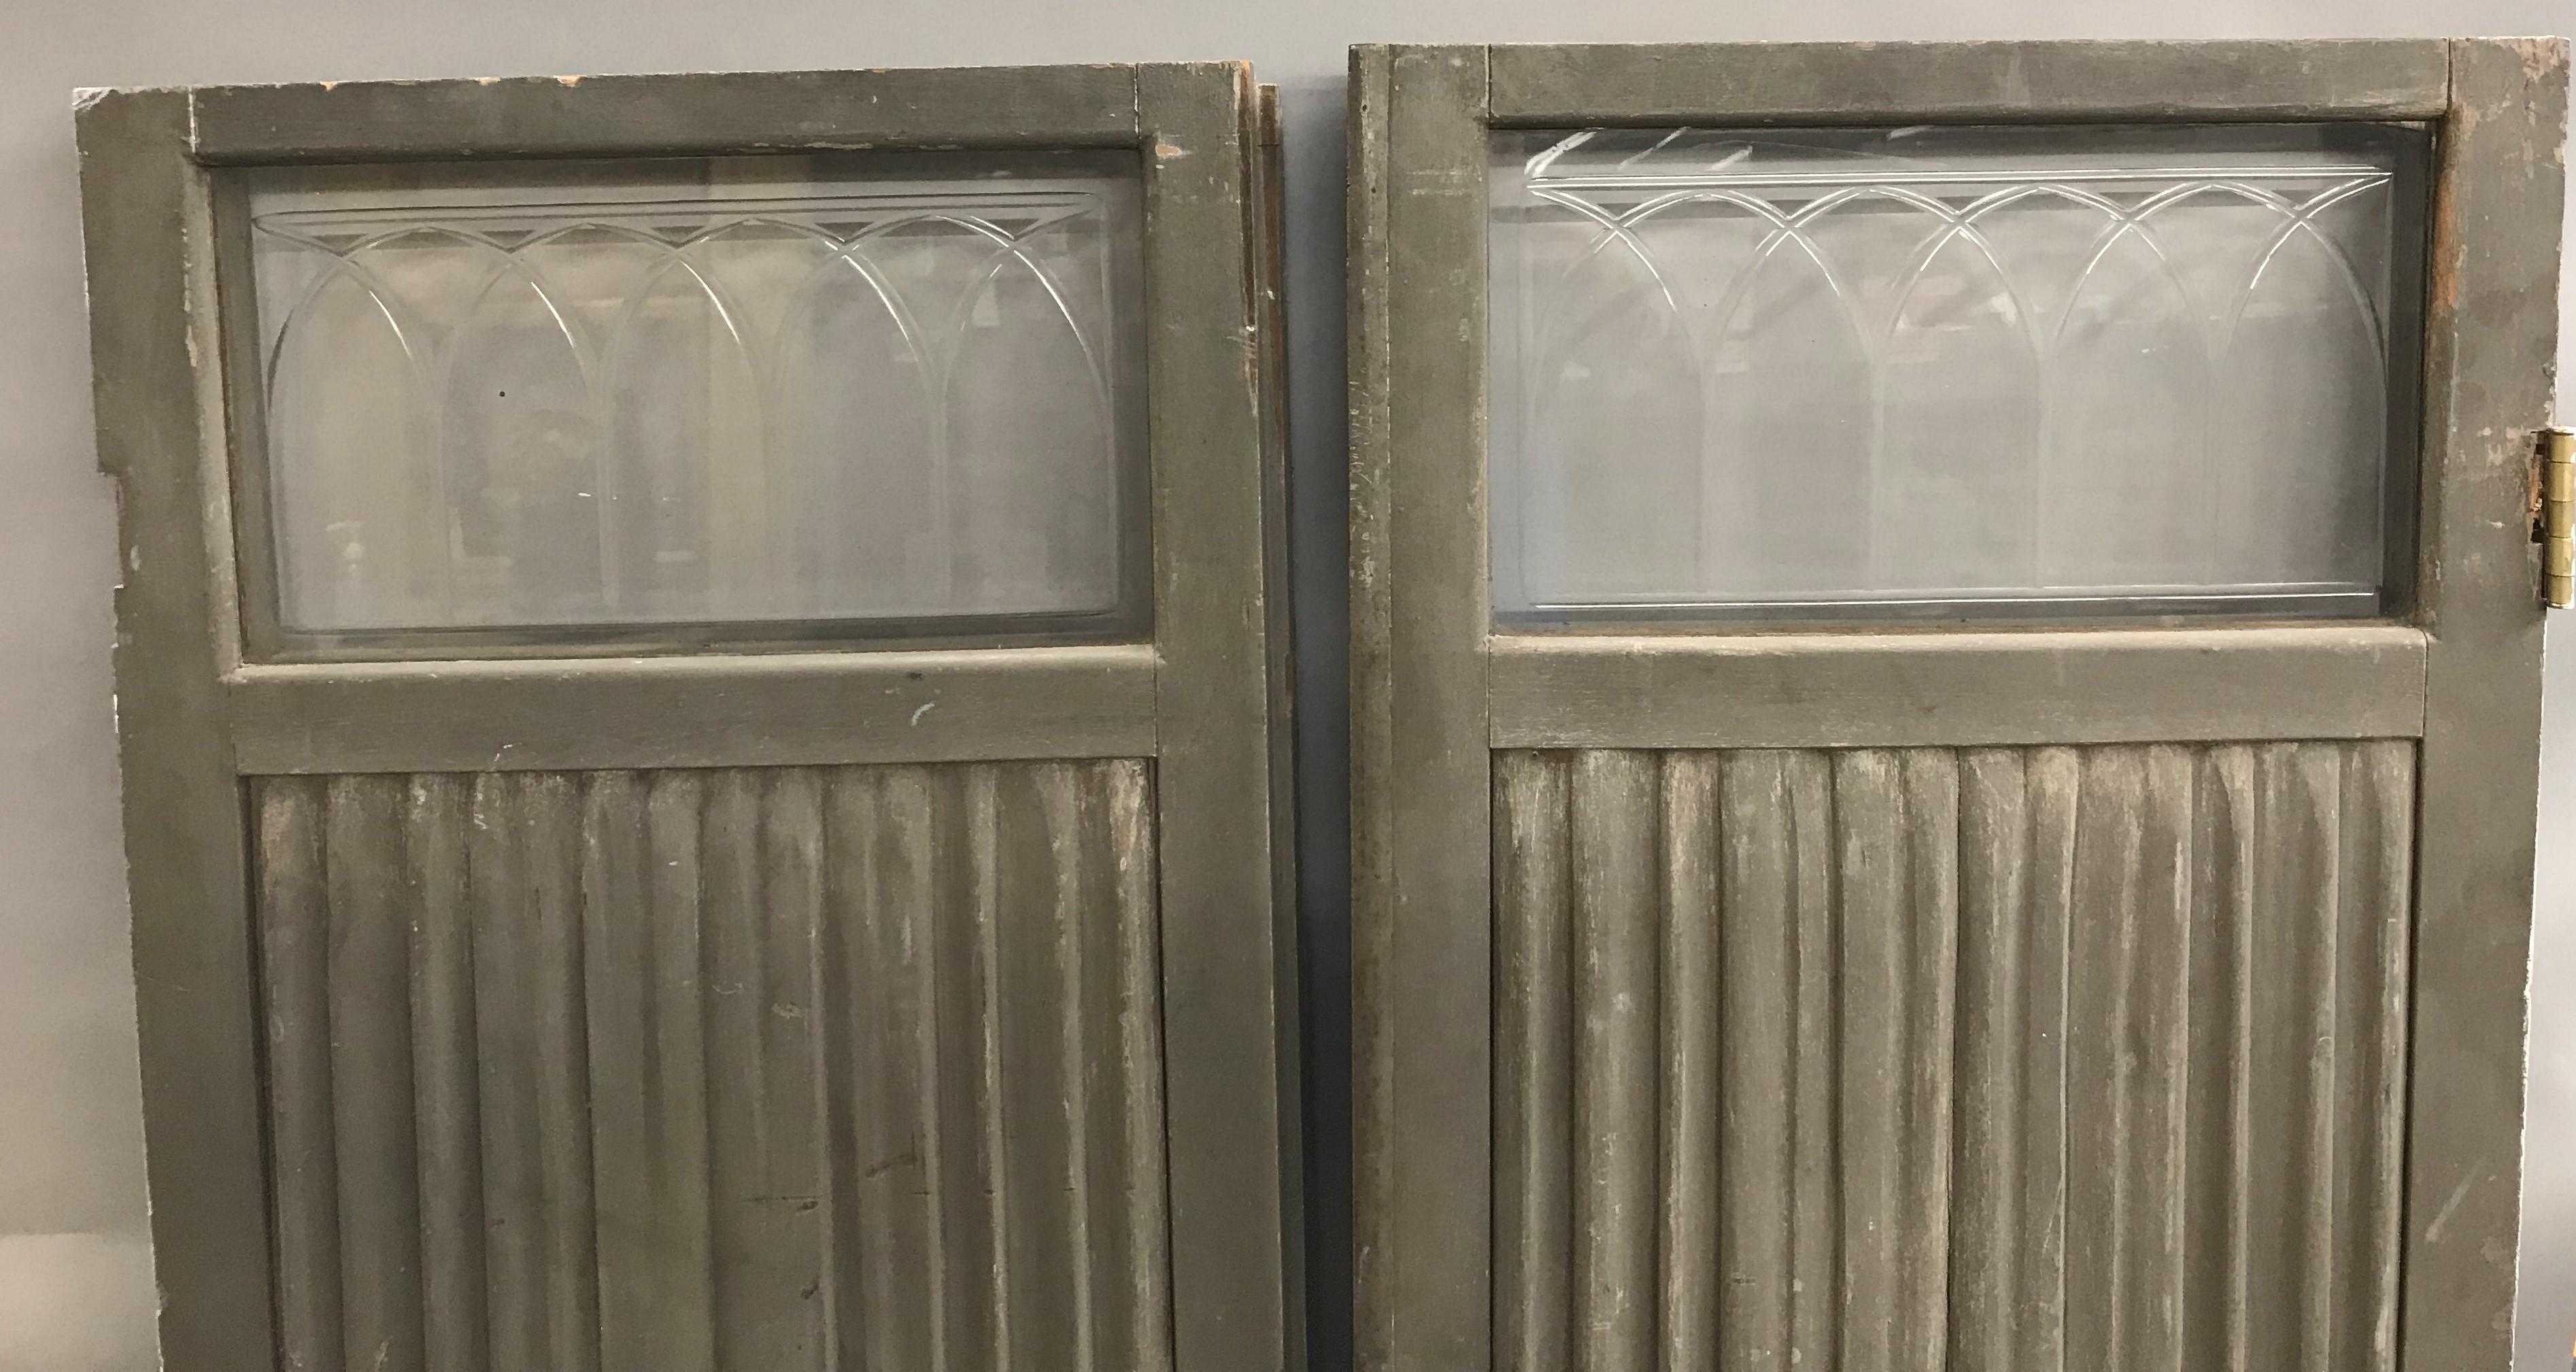 Ein feines Paar viktorianischer Holztüren aus einem pferdegezogenen Leichenwagen oder einer Bestattungskutsche mit rechteckigen Glaskreuzen an der Oberseite, die mit reliefartigen Schnitzereien in alter grauer Farbe versehen sind. Das Paar ist